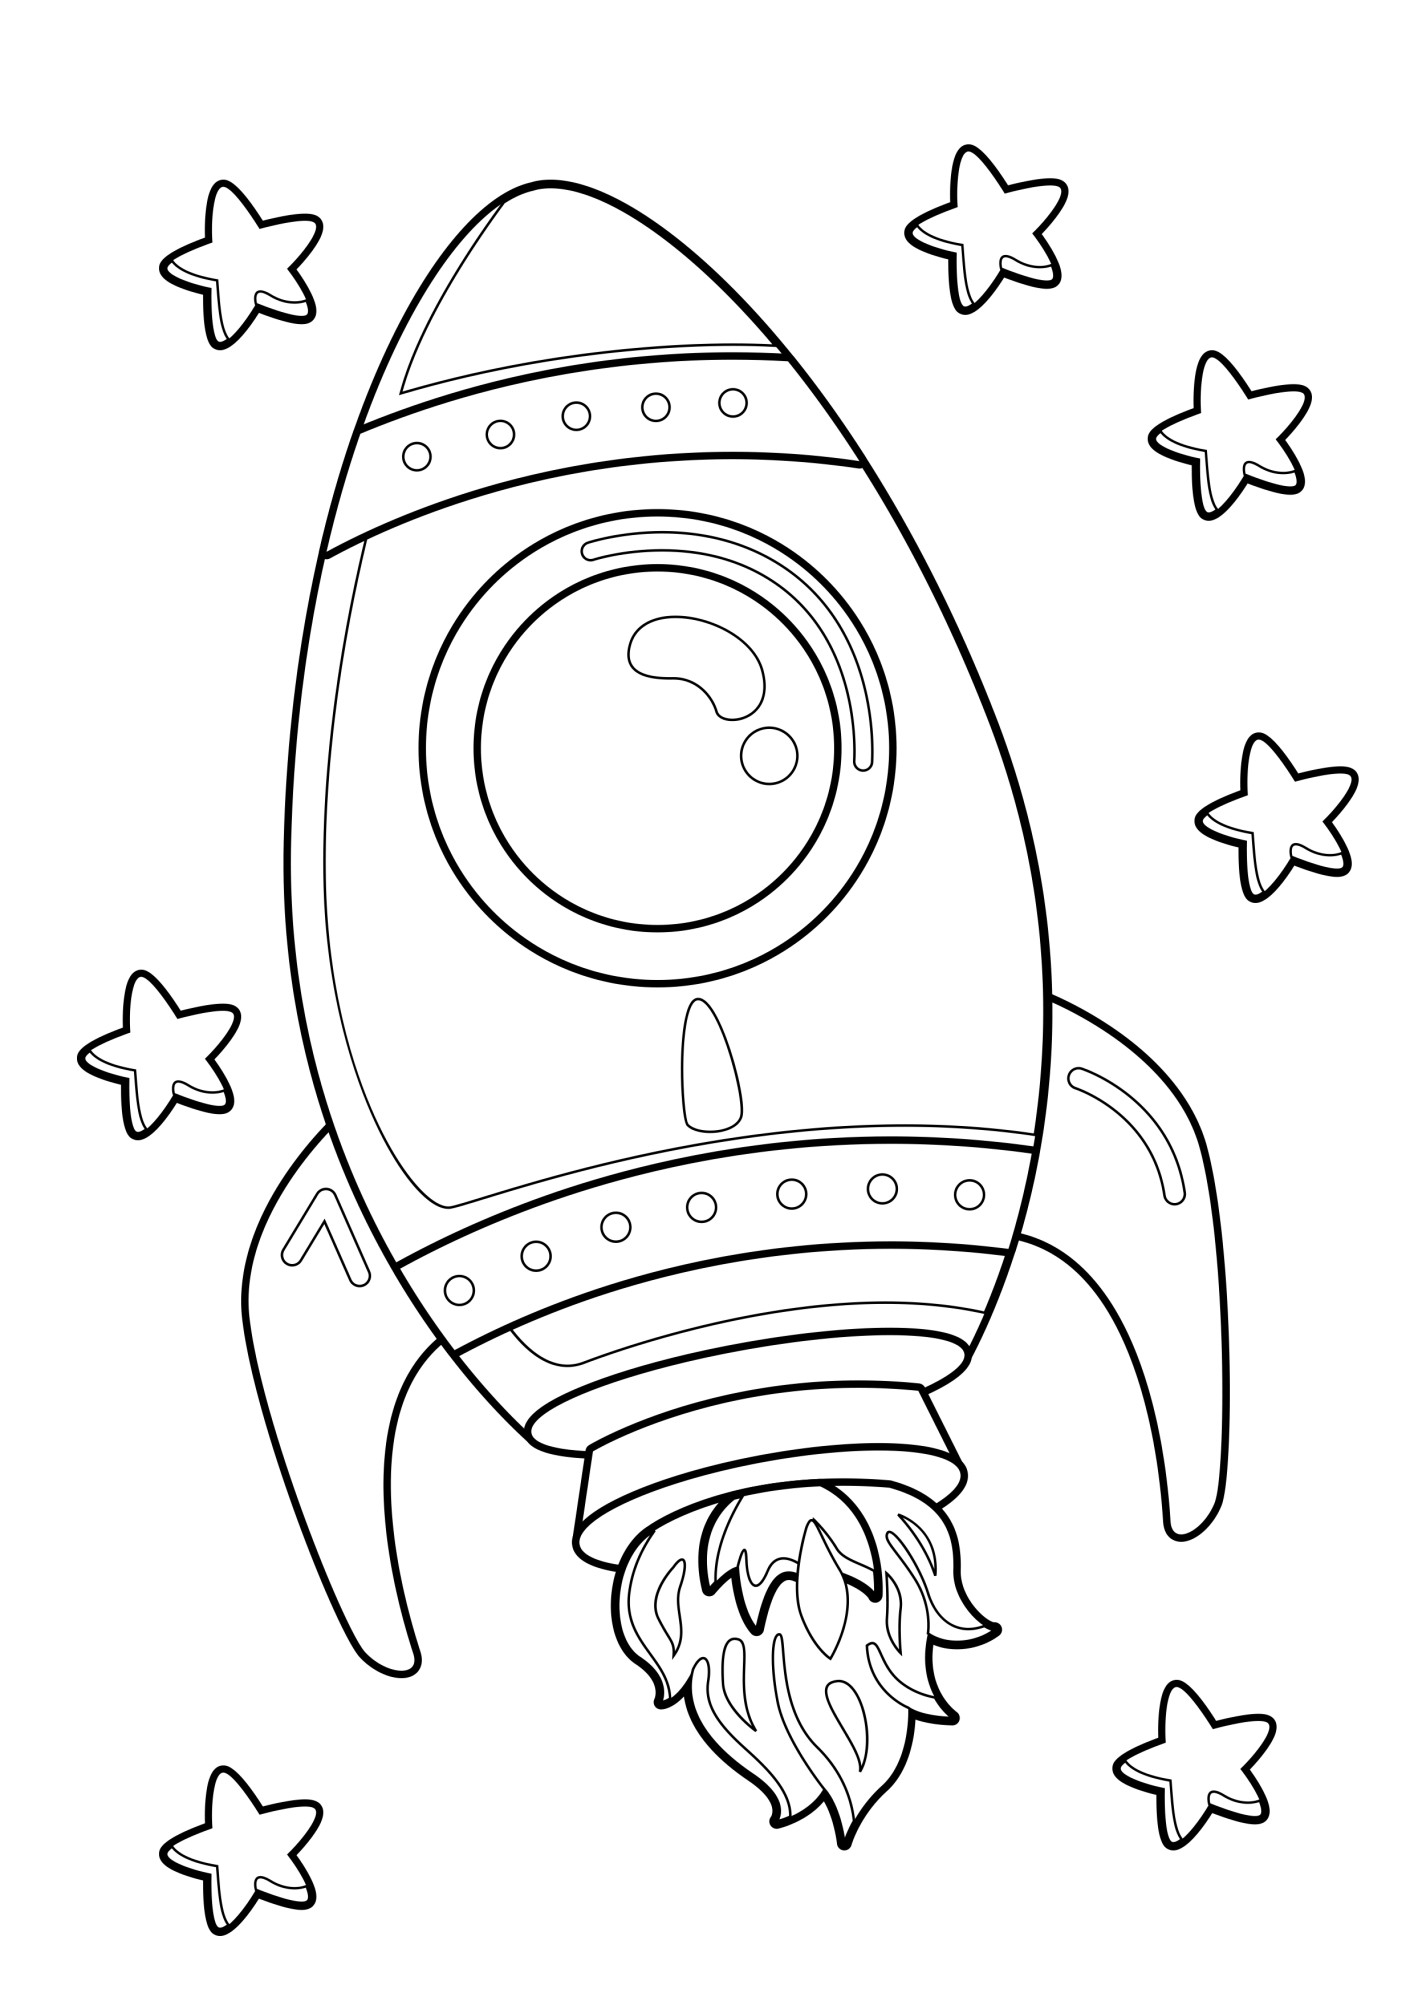 Раскраска для детей: игрушка космическая ракета со звёздочками